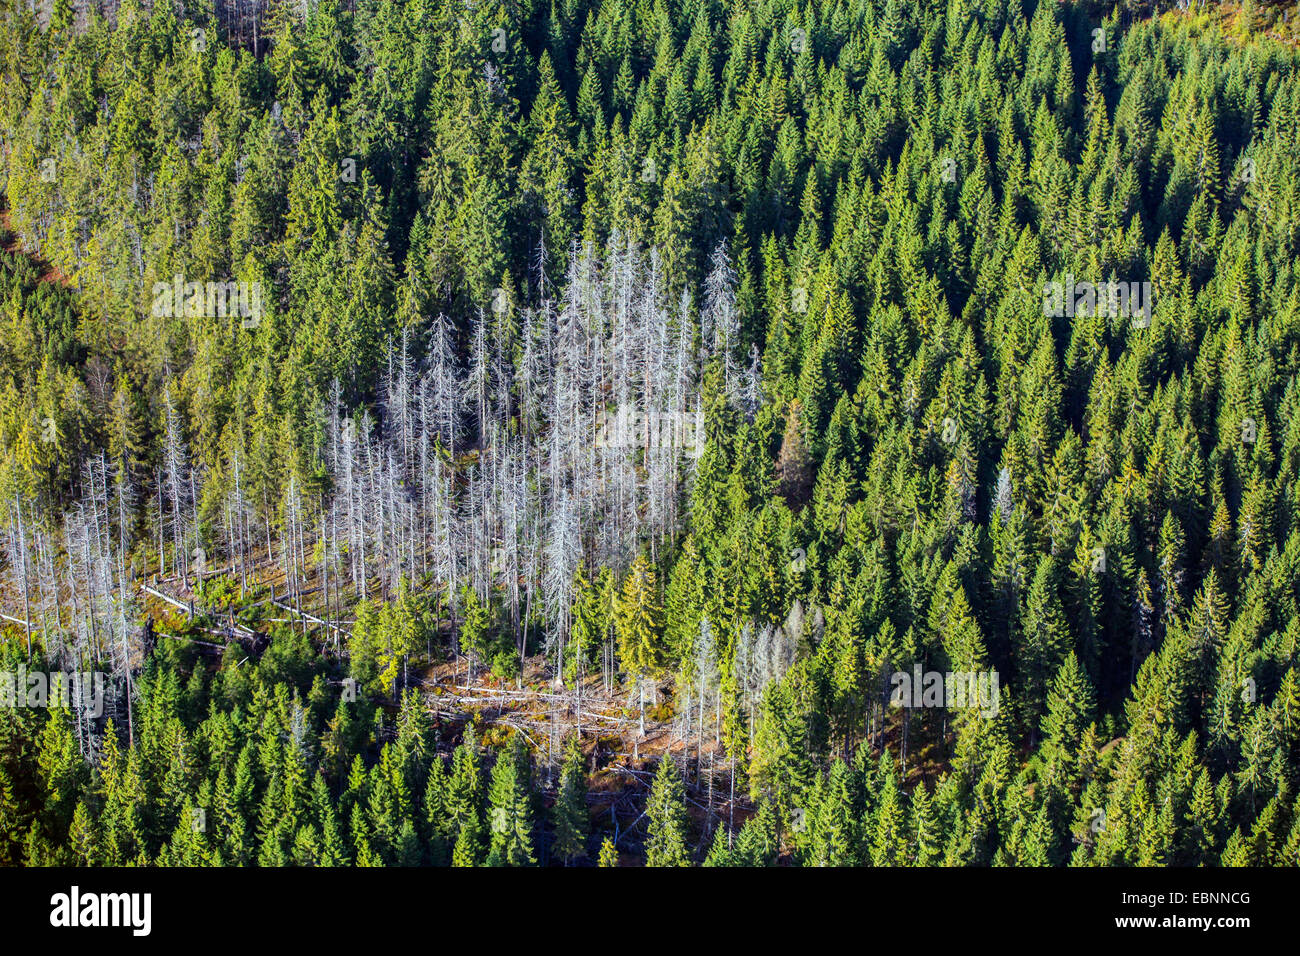 Les scolytes, graveur coléoptères &AMP ; Ambrosia Beetles, coléoptères du bois (Scolytidae (Ipidae)), vue aérienne de la zone d'infestation dans une forêt d'épinettes encore intact, la République tchèque, l'Boehmerwald Banque D'Images